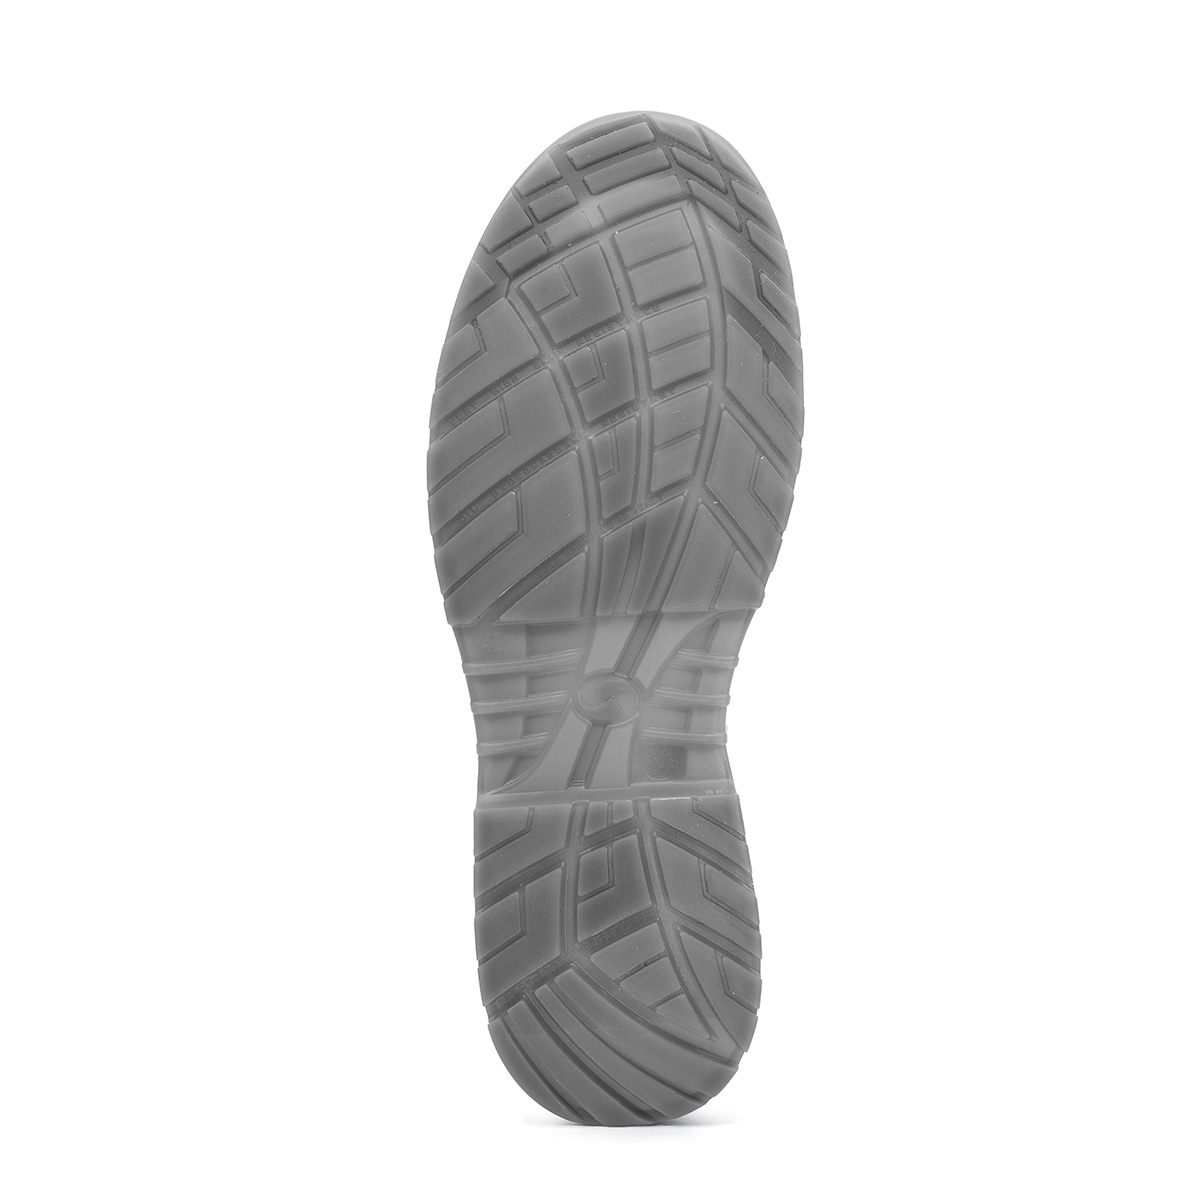 Crystal BERGAMO - Ankle boot con classe di protezione S2 SRC - Codice  modello 86206-00 Sixton Peak Safety Shoes